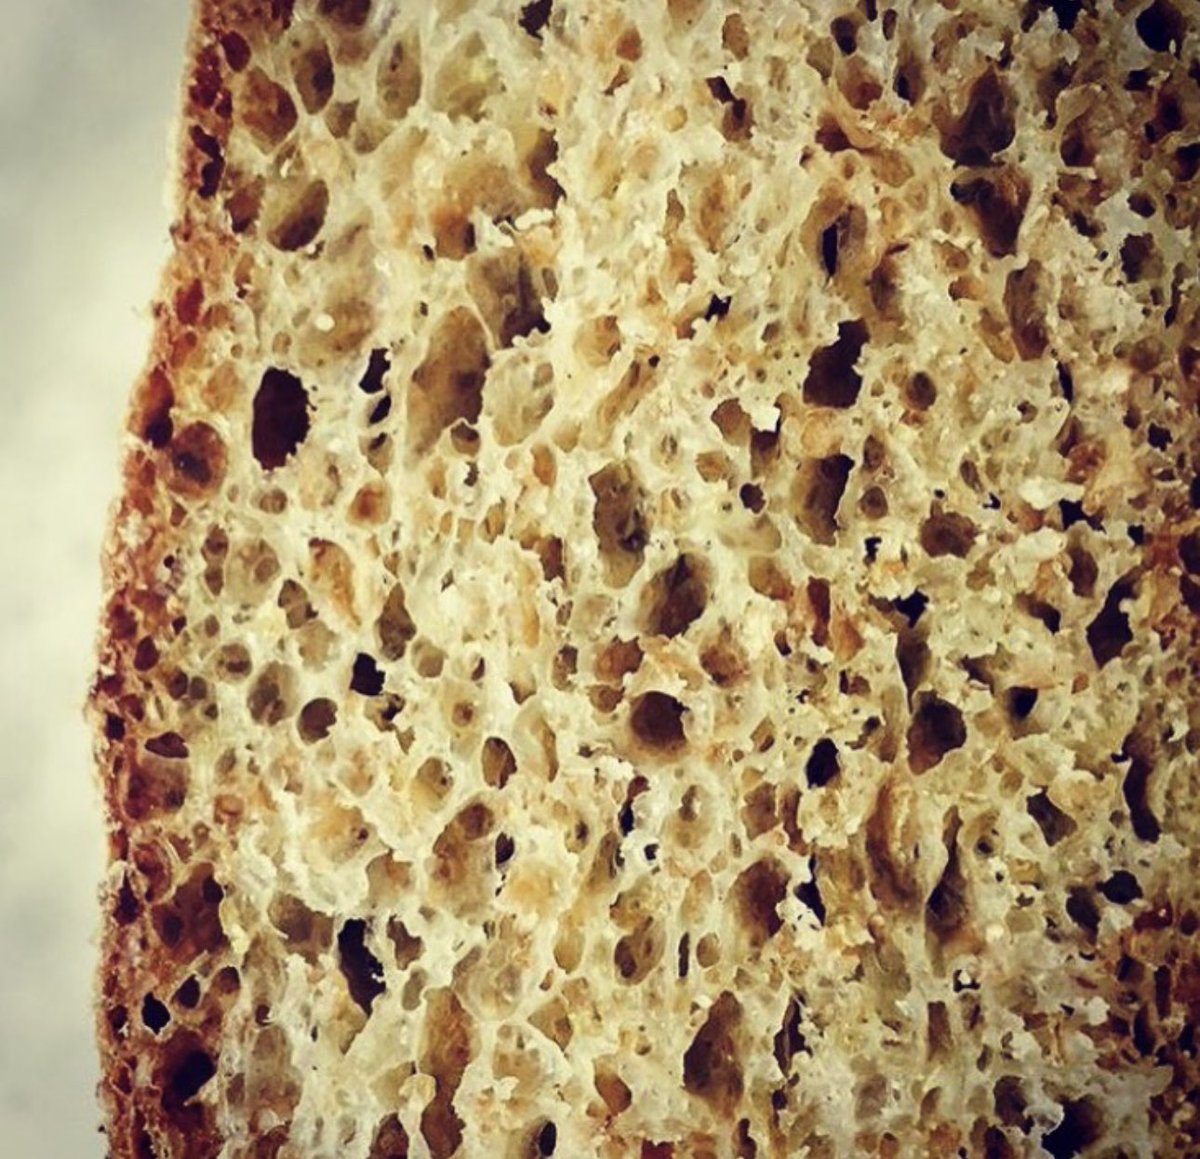 Gorseflower sourdough #homebaking #bread #sourdough #realbread #gorseflower #baking